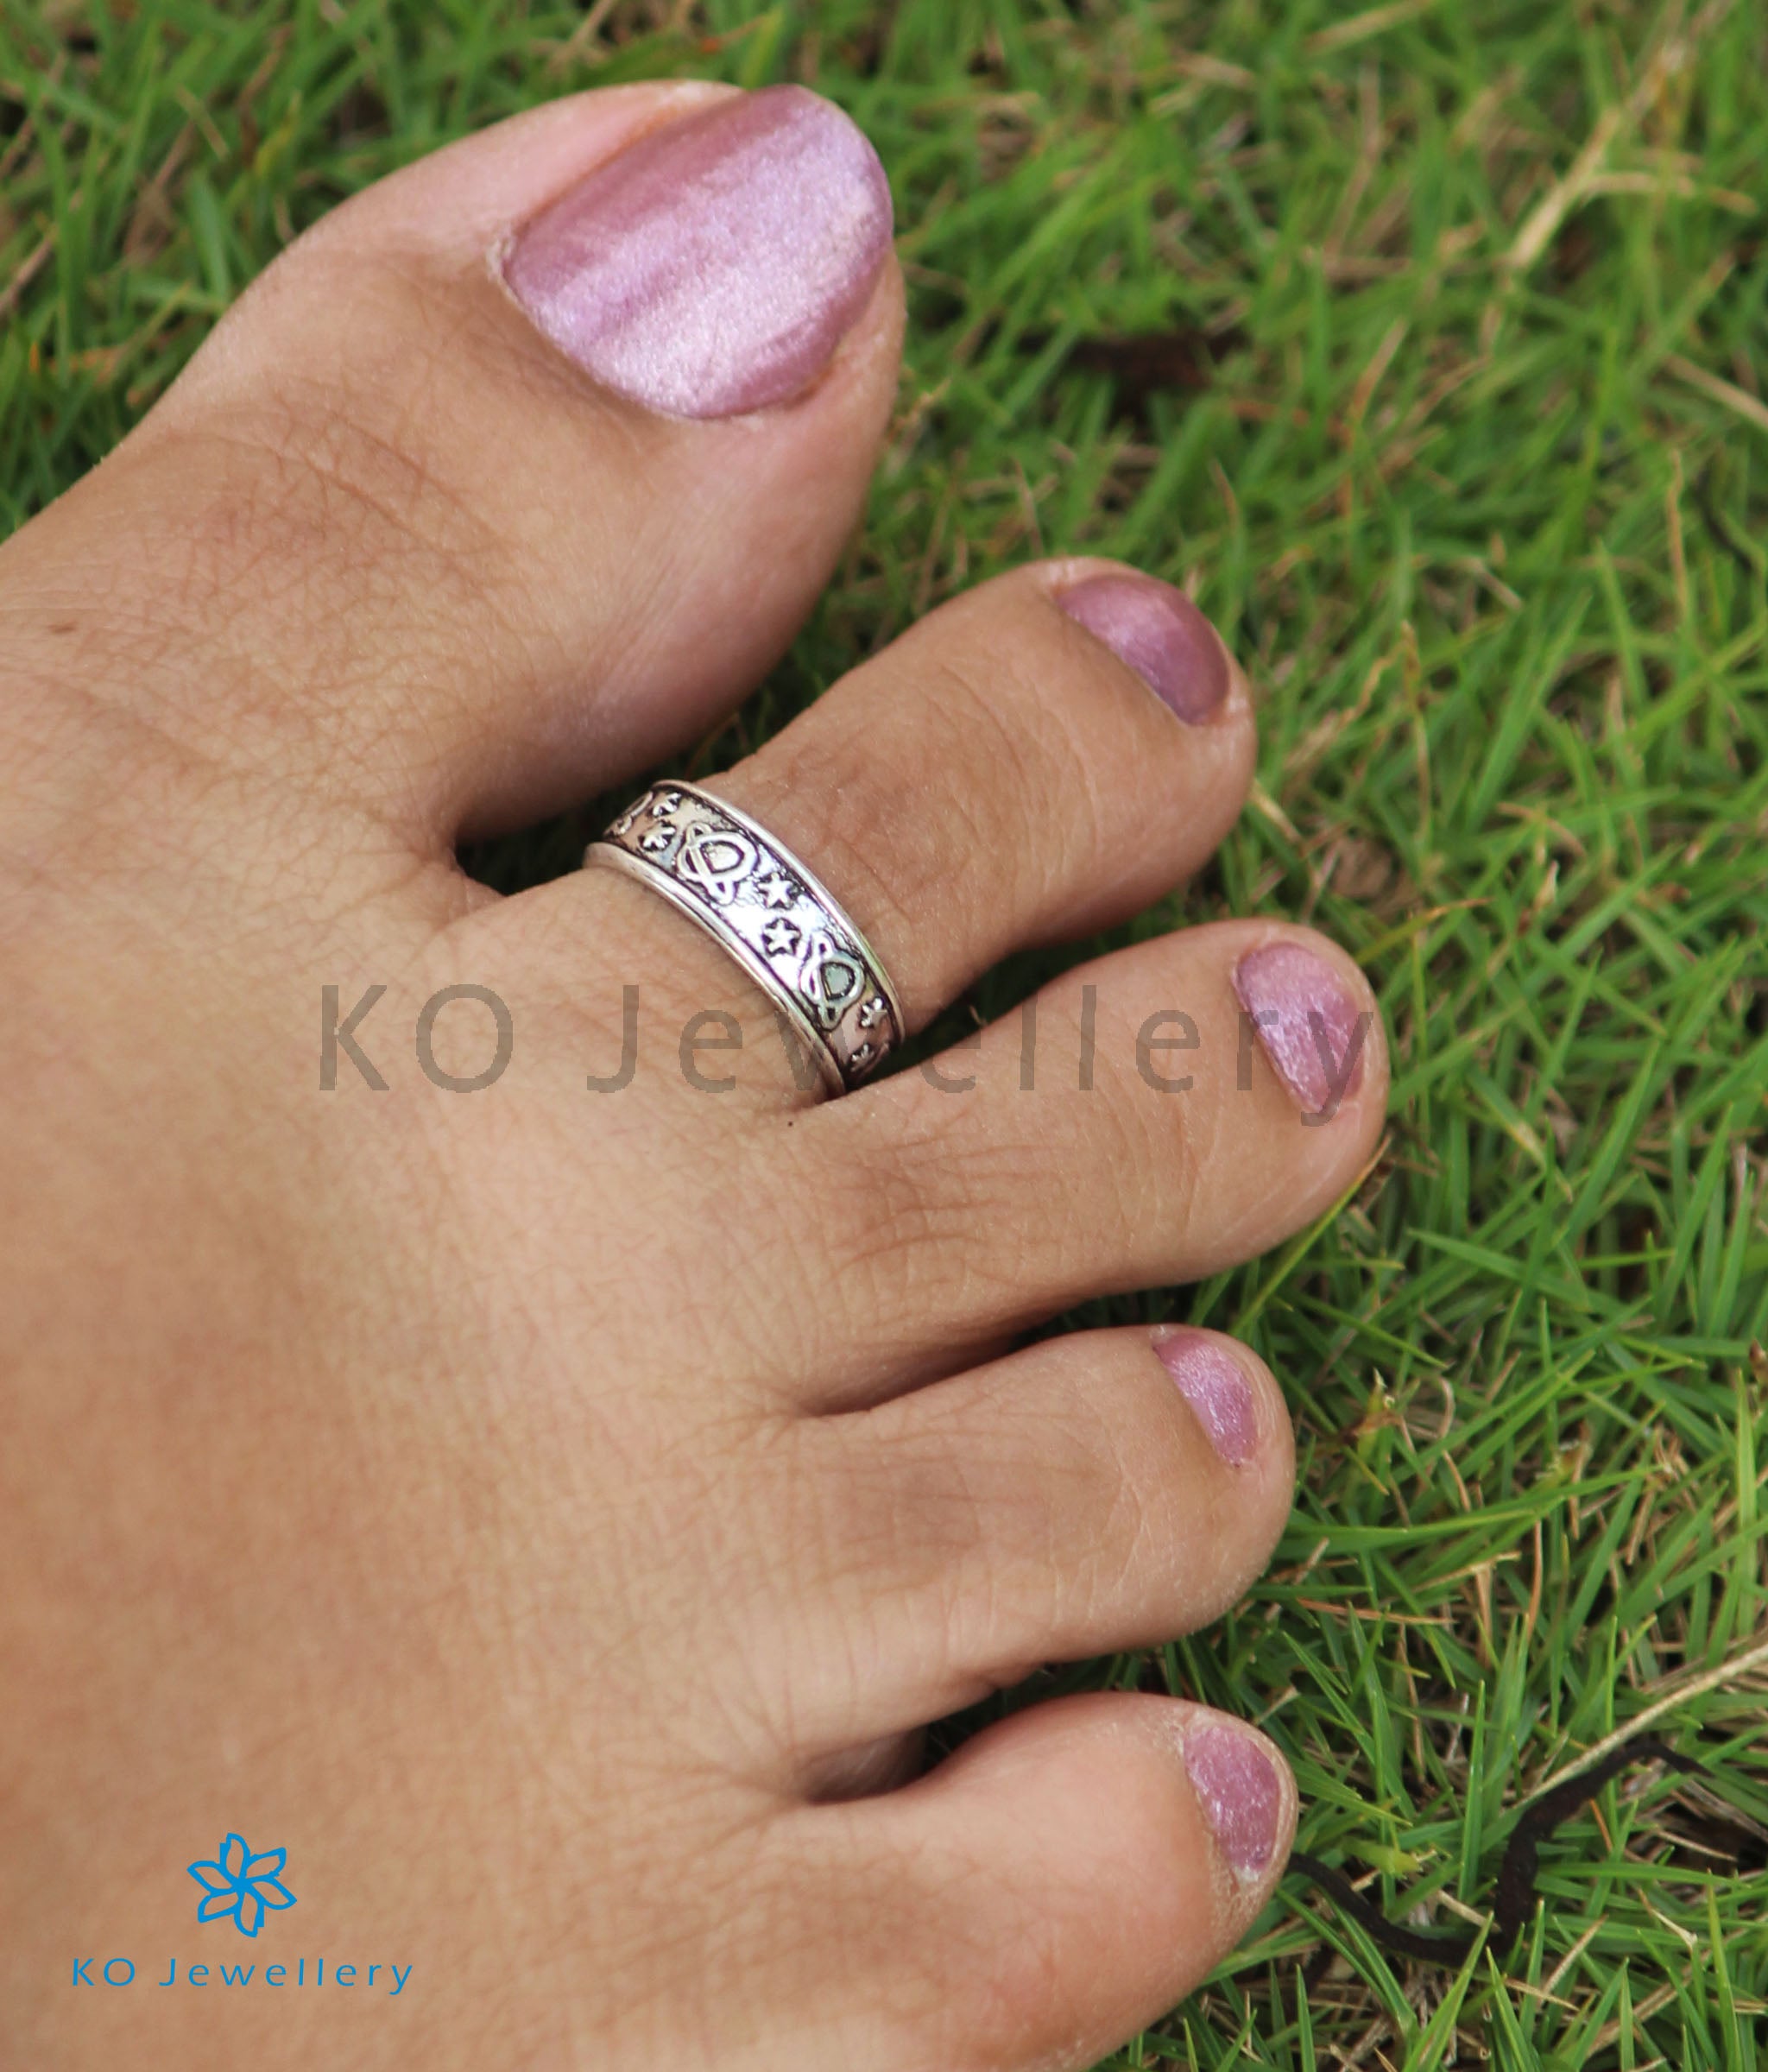 Reasons Why Married Women Wear Toe Rings - Boldsky.com